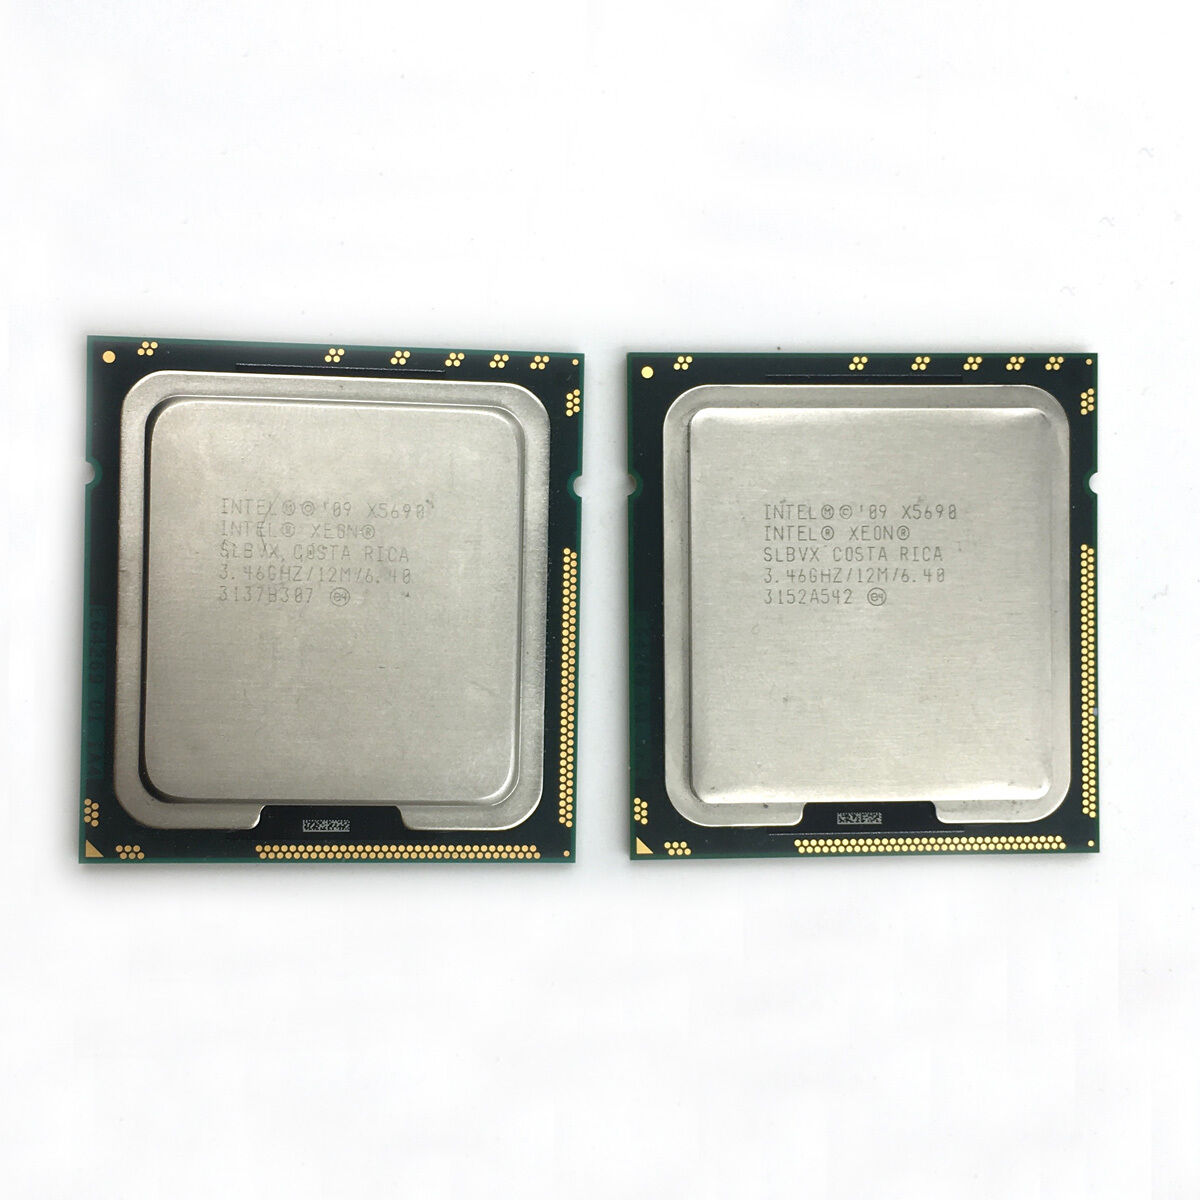 2x Intel Xeon X5690 3.46GHz 12MB 6-Cores 6.40GT/s LGA1366 SLBVX Matching Pair